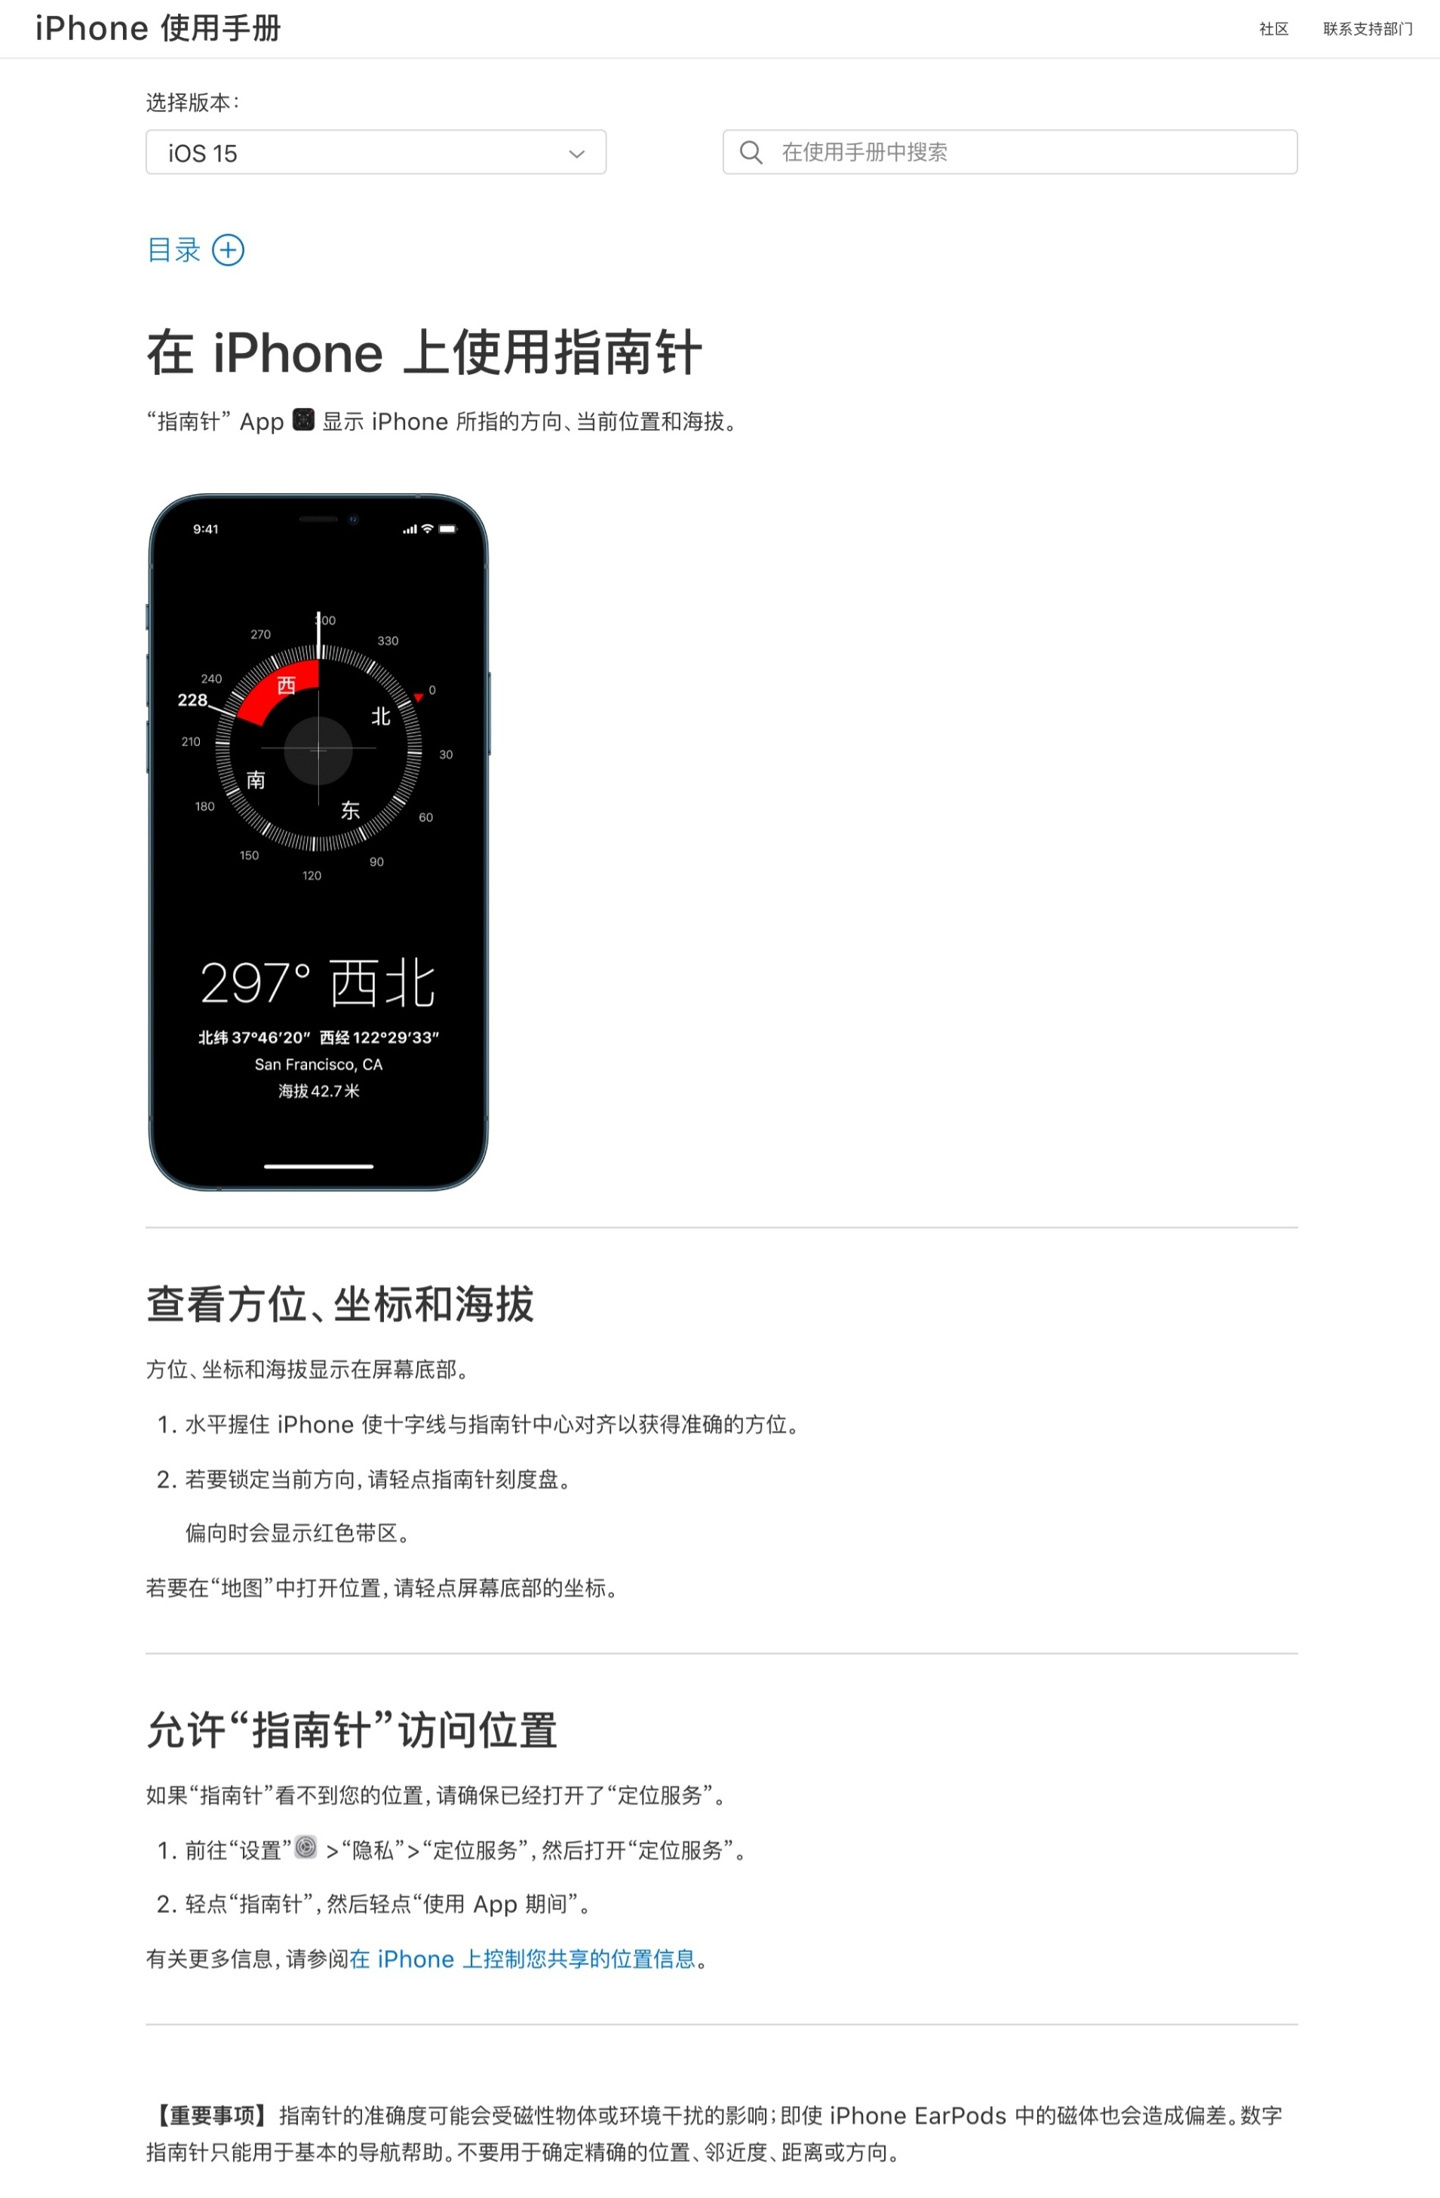 苹果官网更新iPhone使用手册 确认指南针不再显示海拔等信息（苹果指南不准）